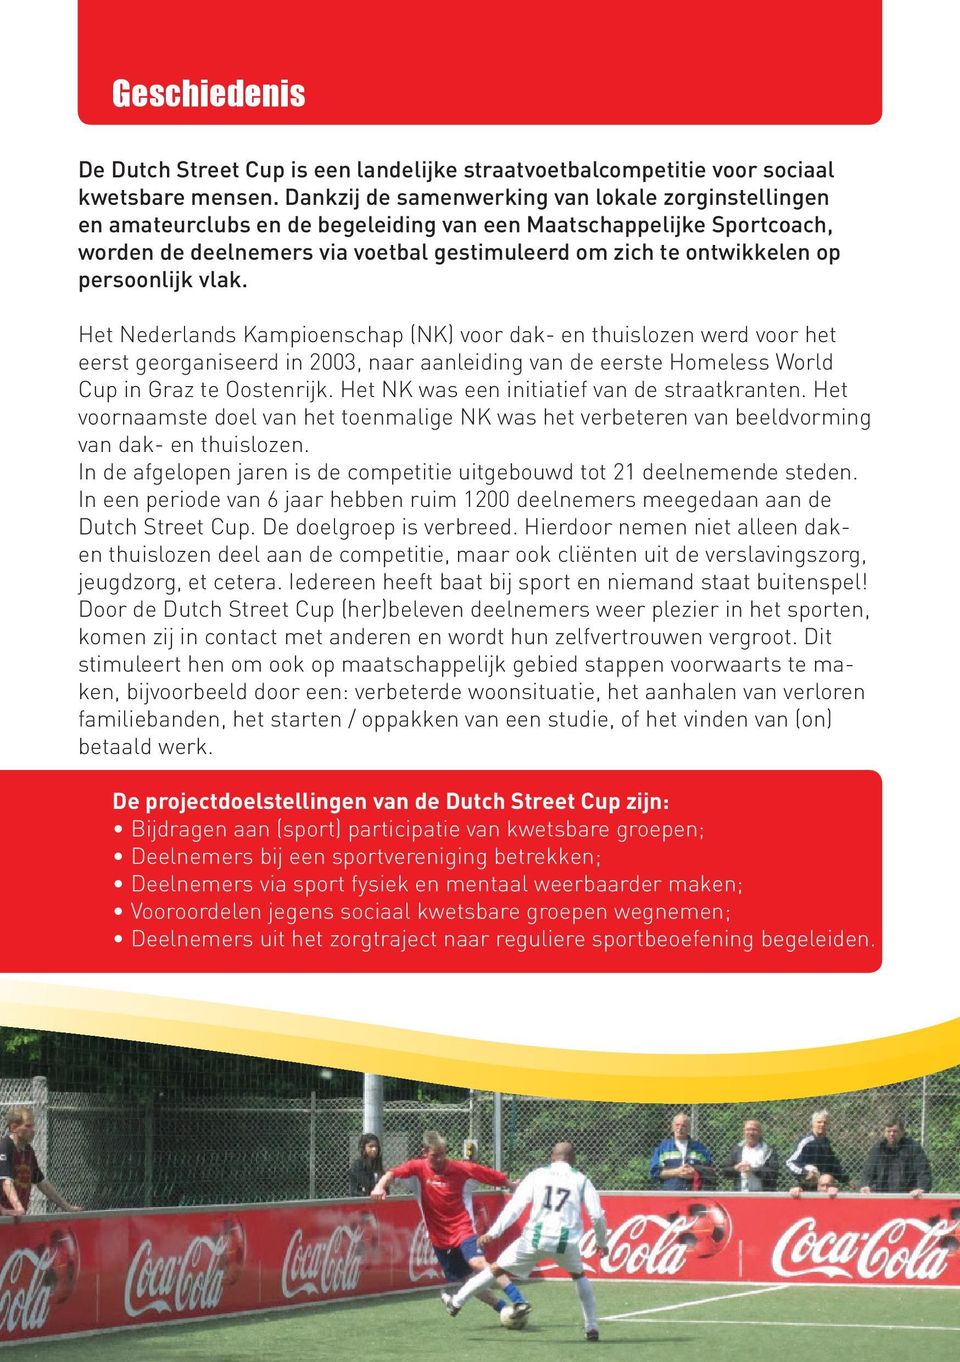 persoonlijk vlak. Het Nederlands Kampioenschap (NK) voor dak- en thuislozen werd voor het eerst georganiseerd in 2003, naar aanleiding van de eerste Homeless World Cup in Graz te Oostenrijk.